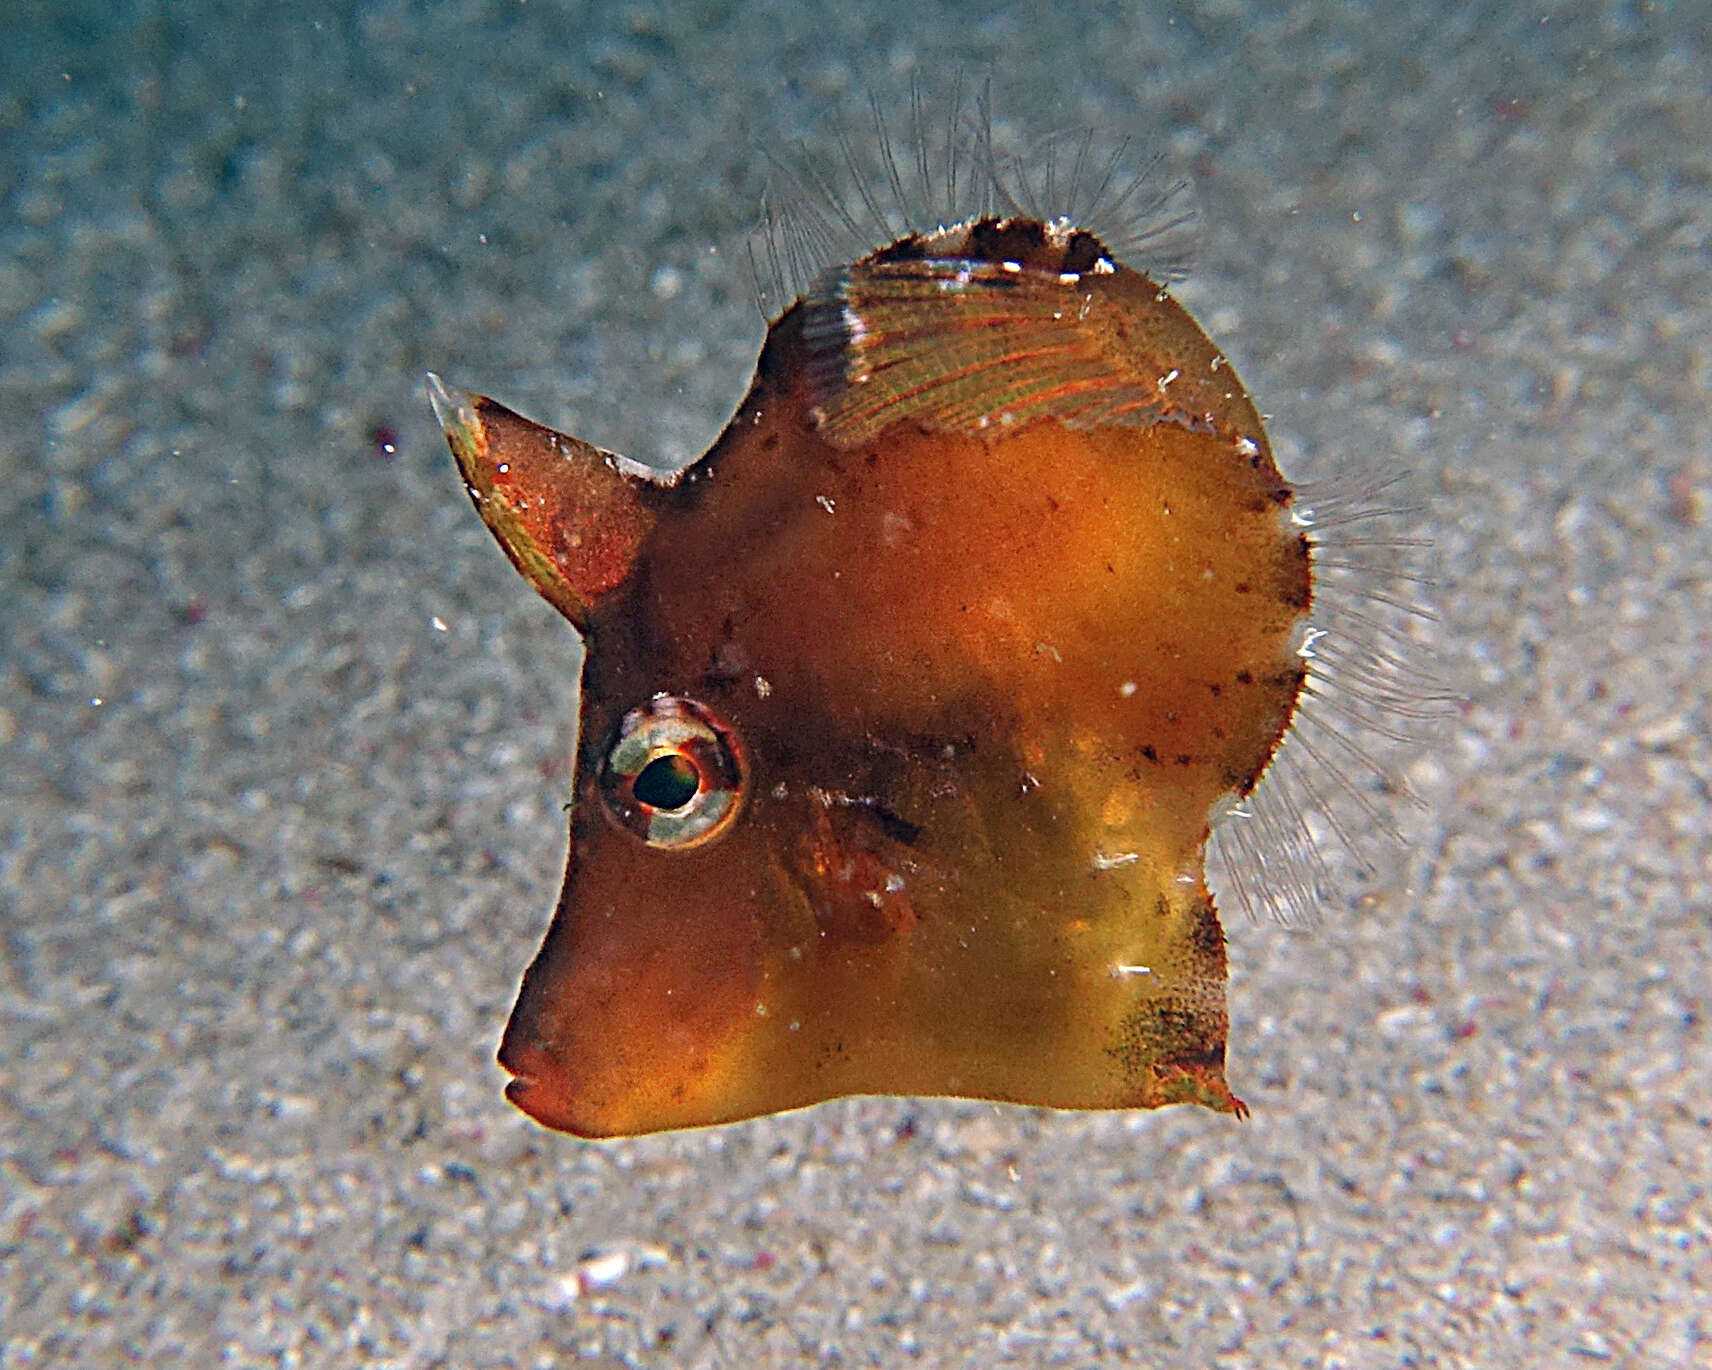 Image of Colurodontis